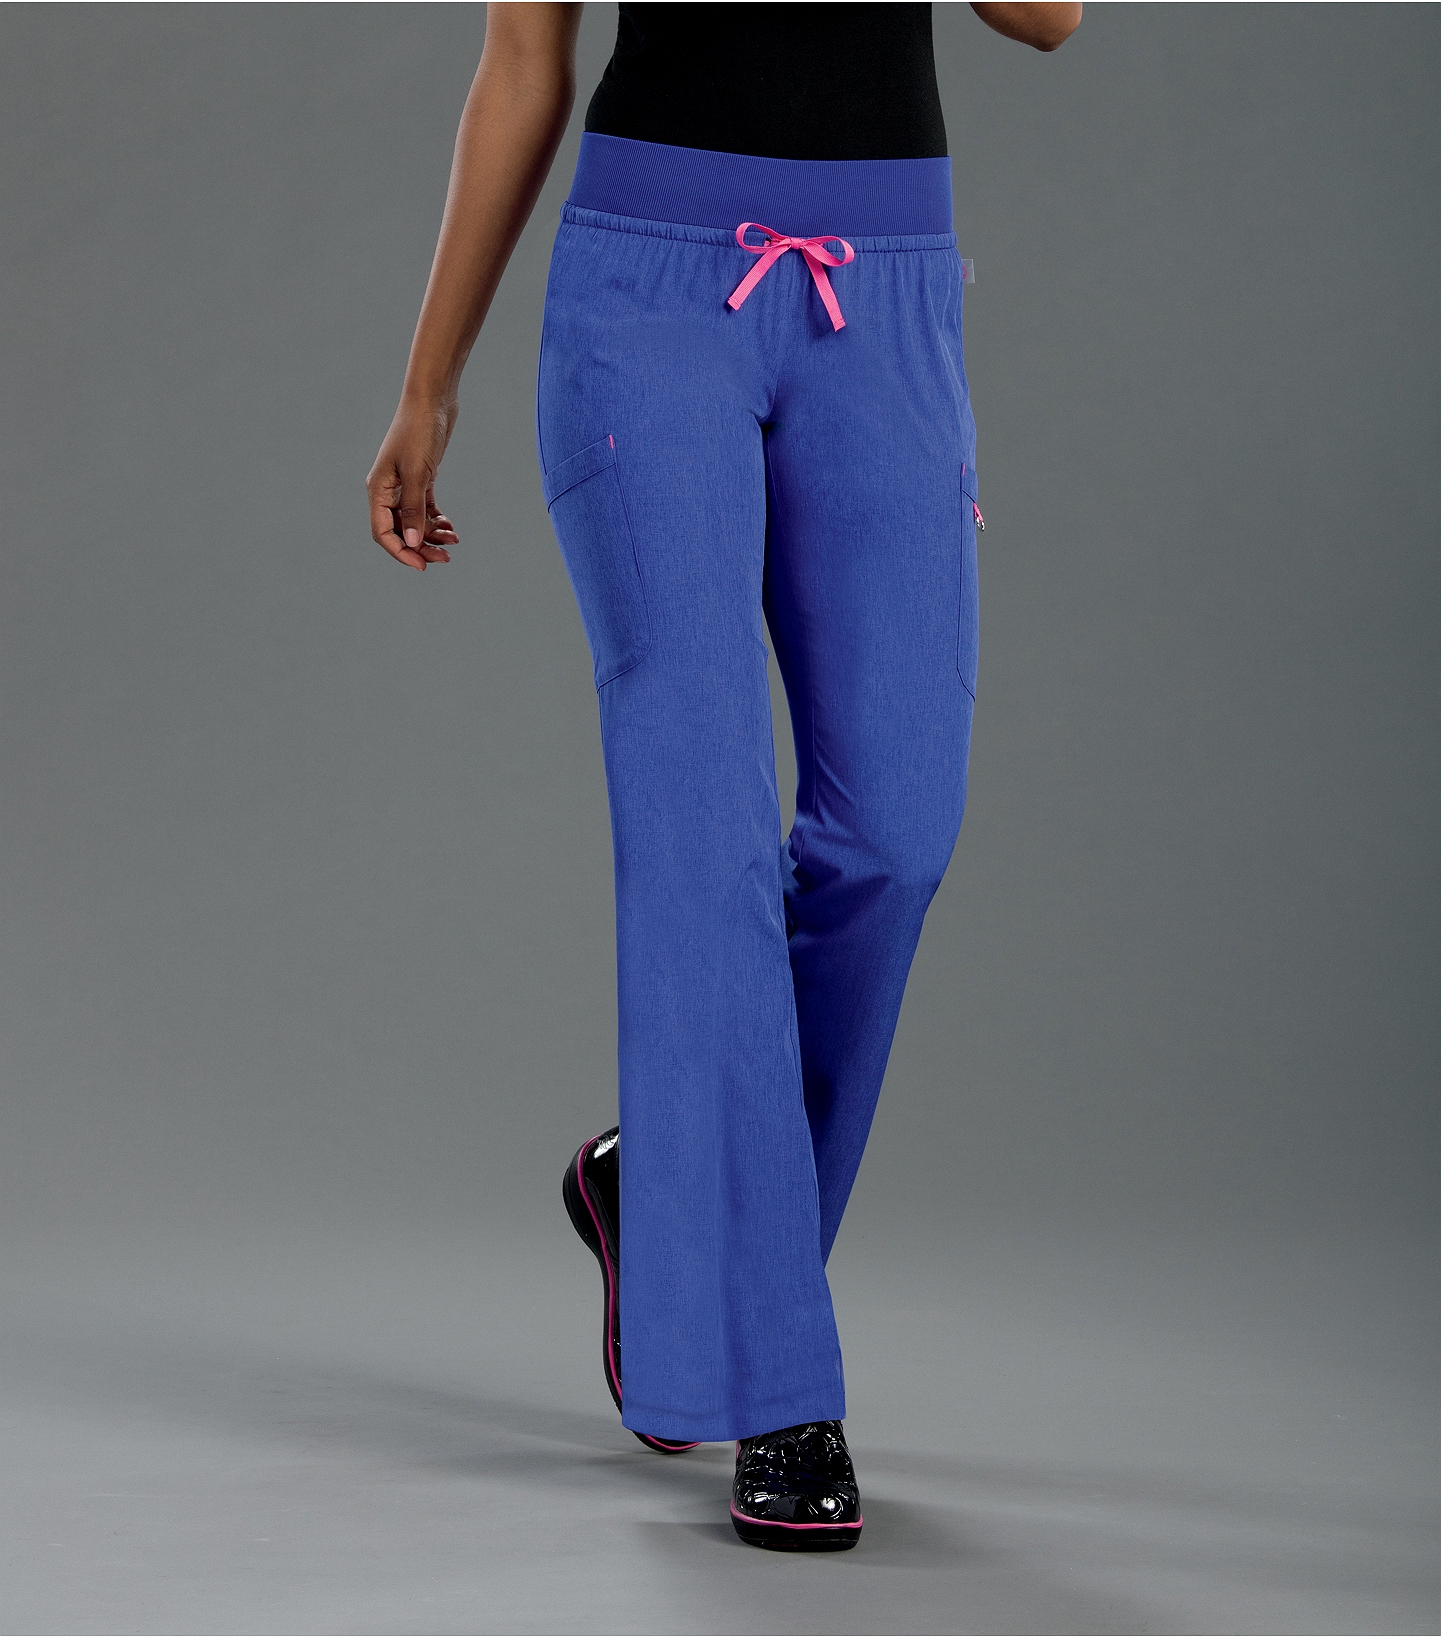 Smitten Women's Elastic Waist Yoga Cargo Scrub Pants-S201019 | Medical ...